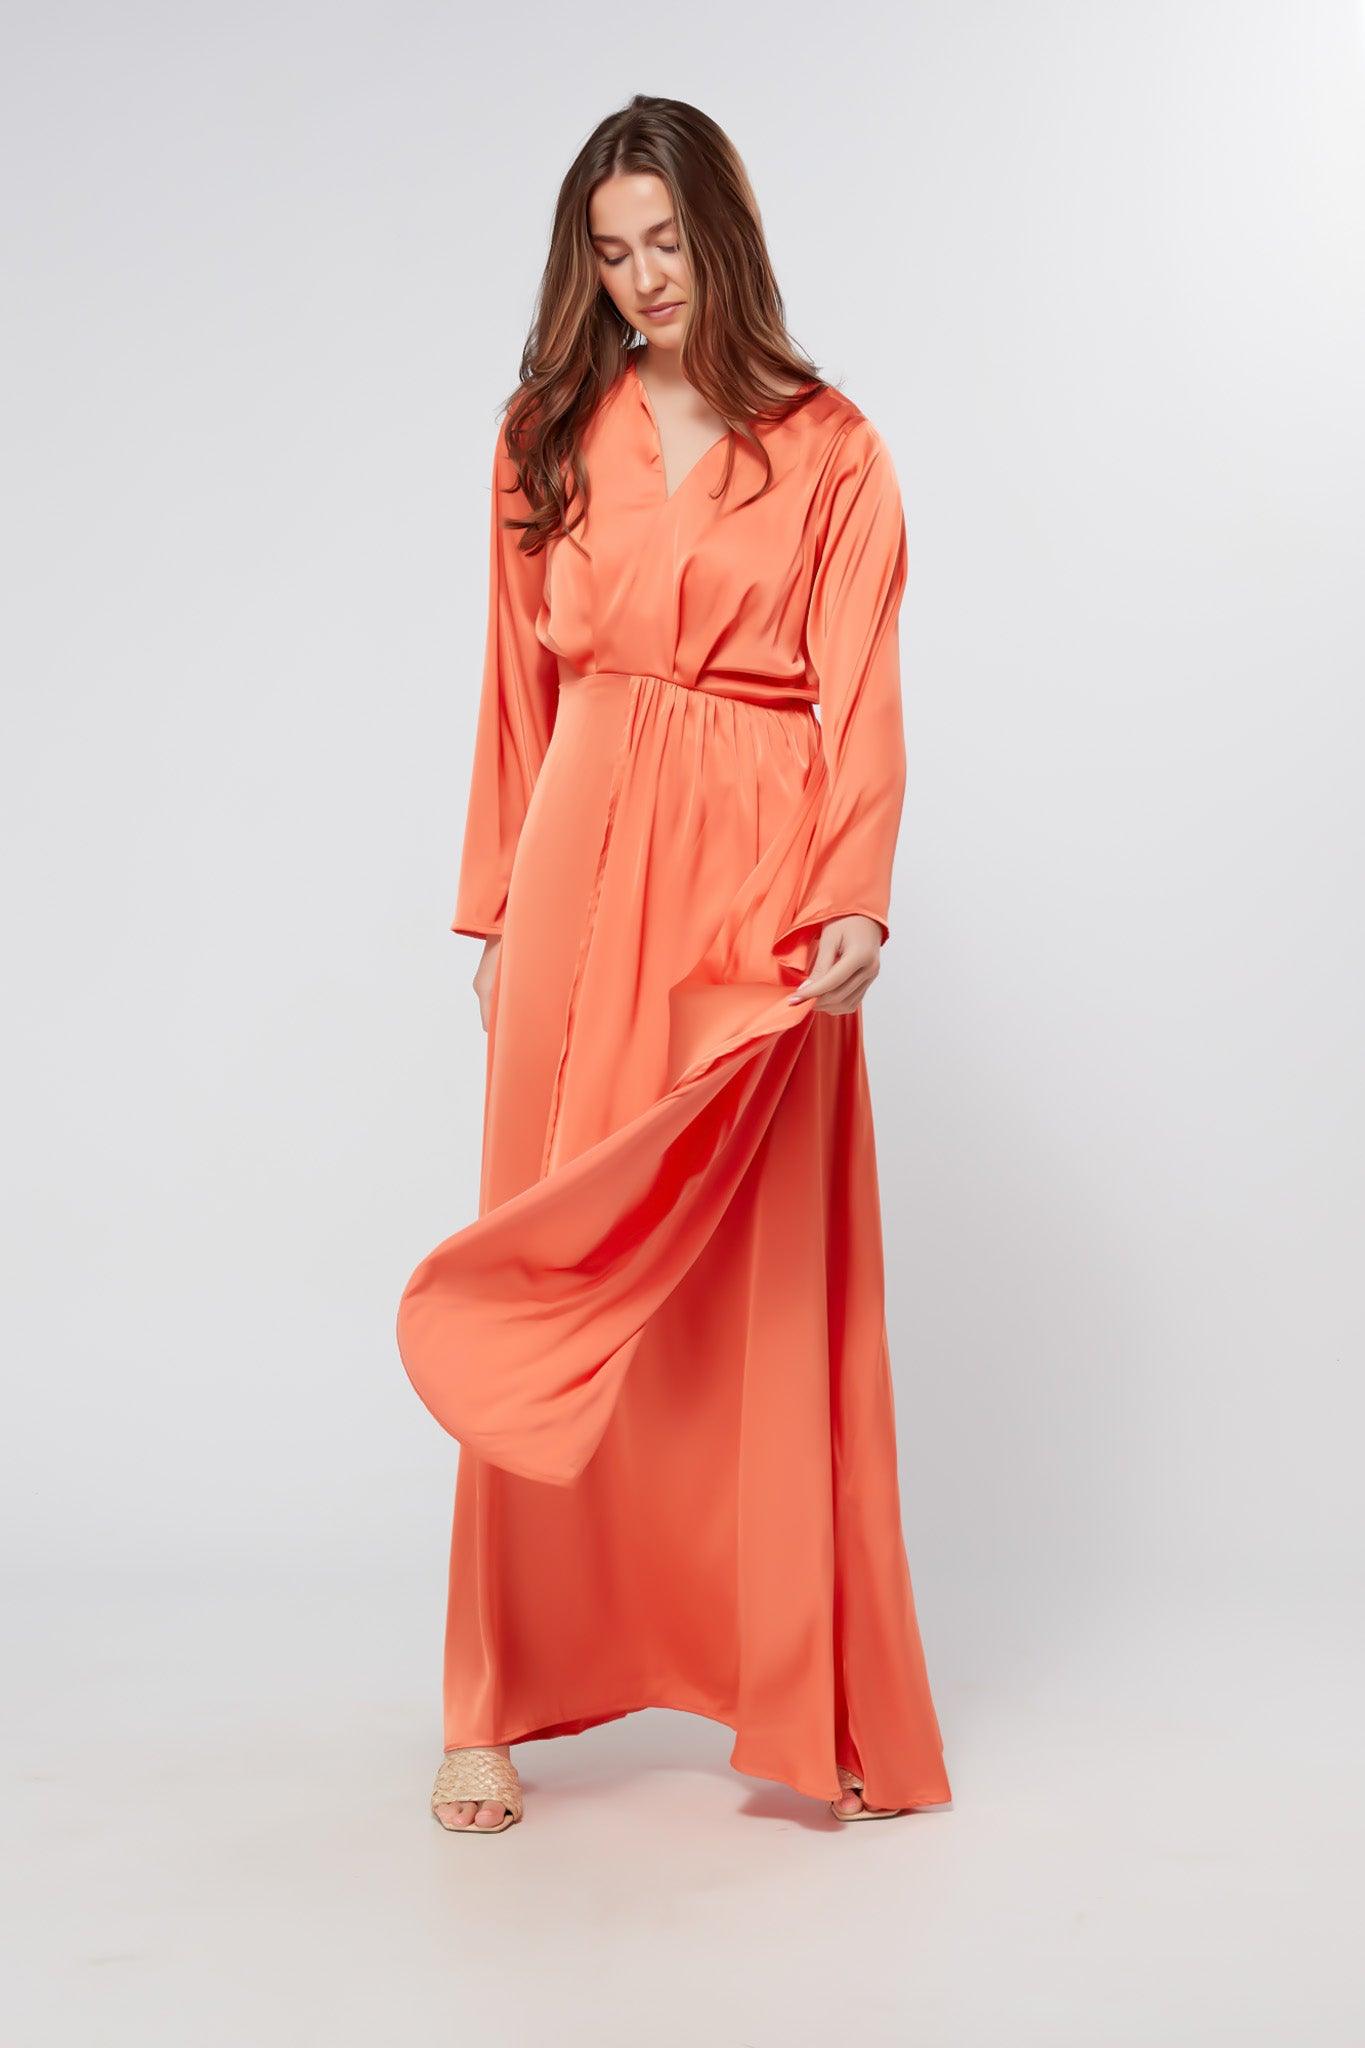 Ophelia Peachy Orange Luxury Soft Satin Maxi Dress With Kimono Sleeves - TAHLIRA